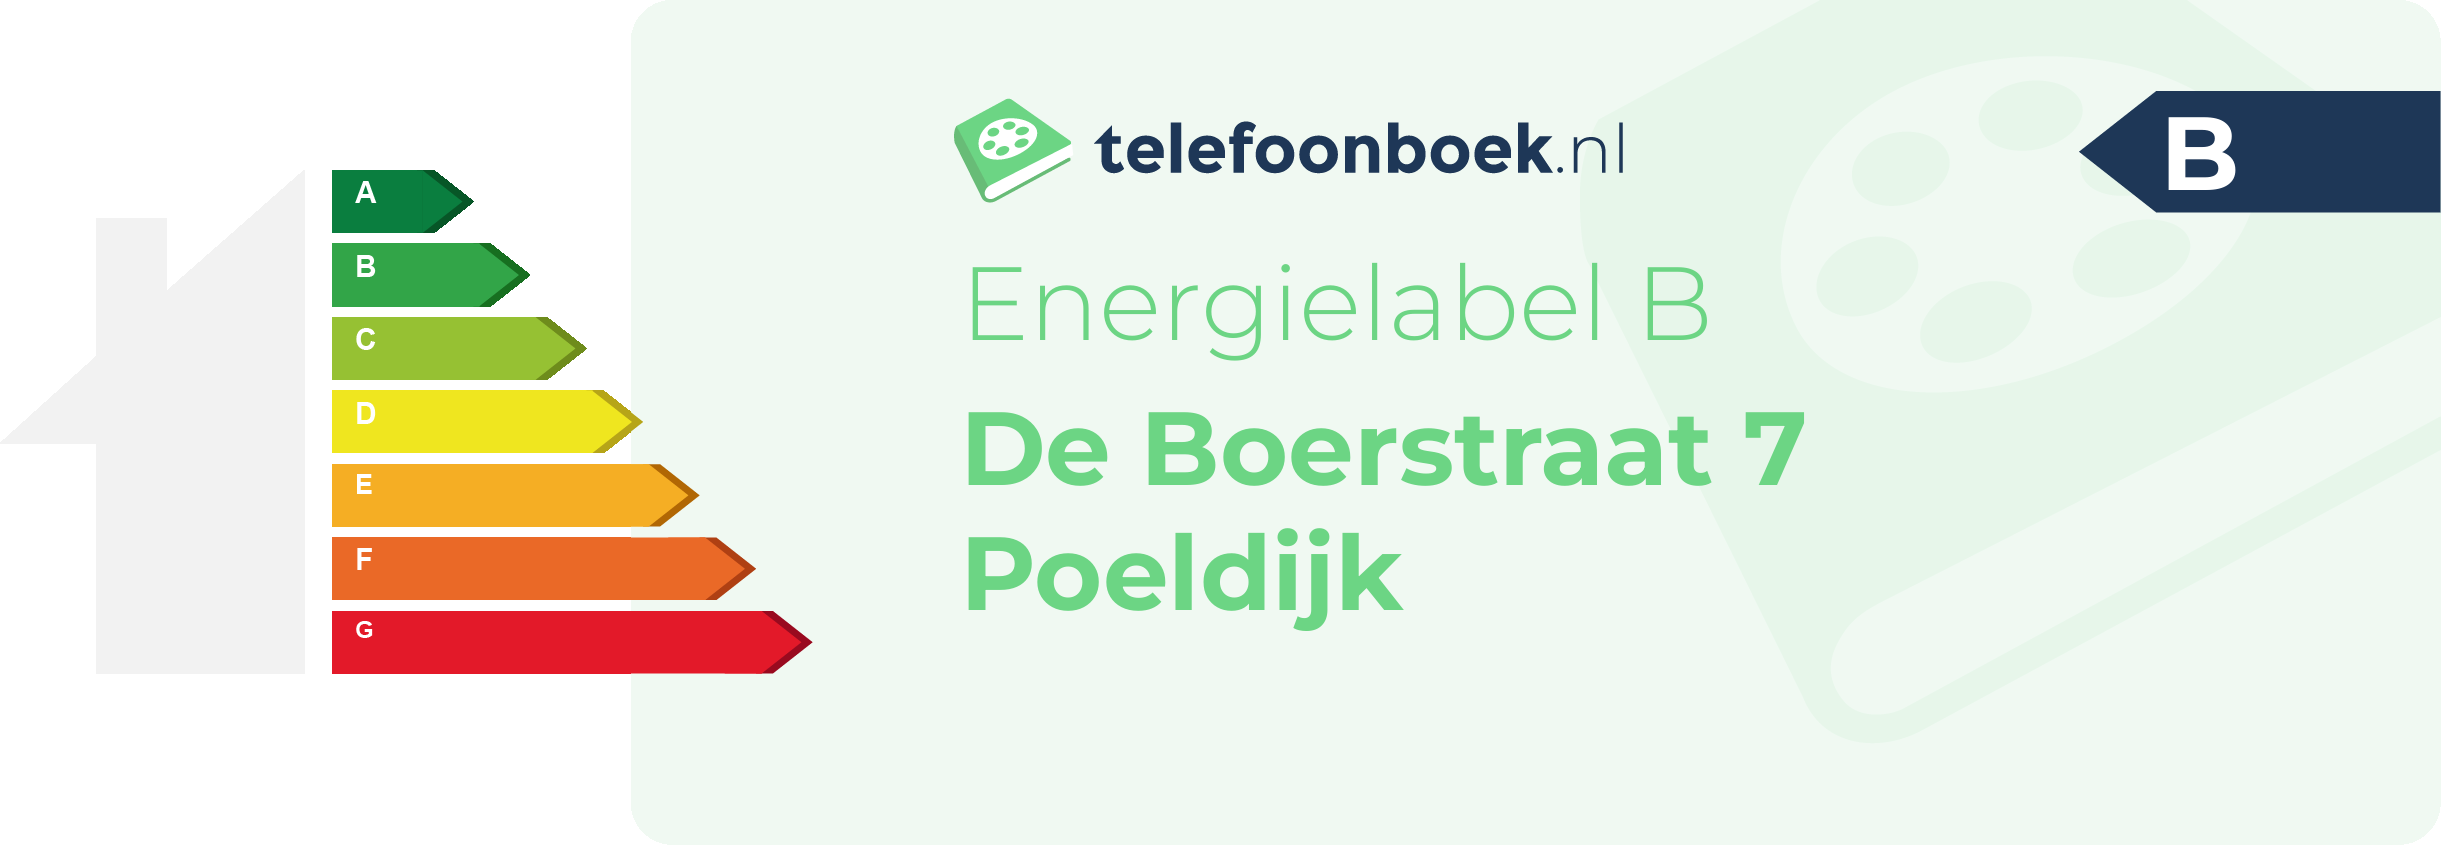 Energielabel De Boerstraat 7 Poeldijk